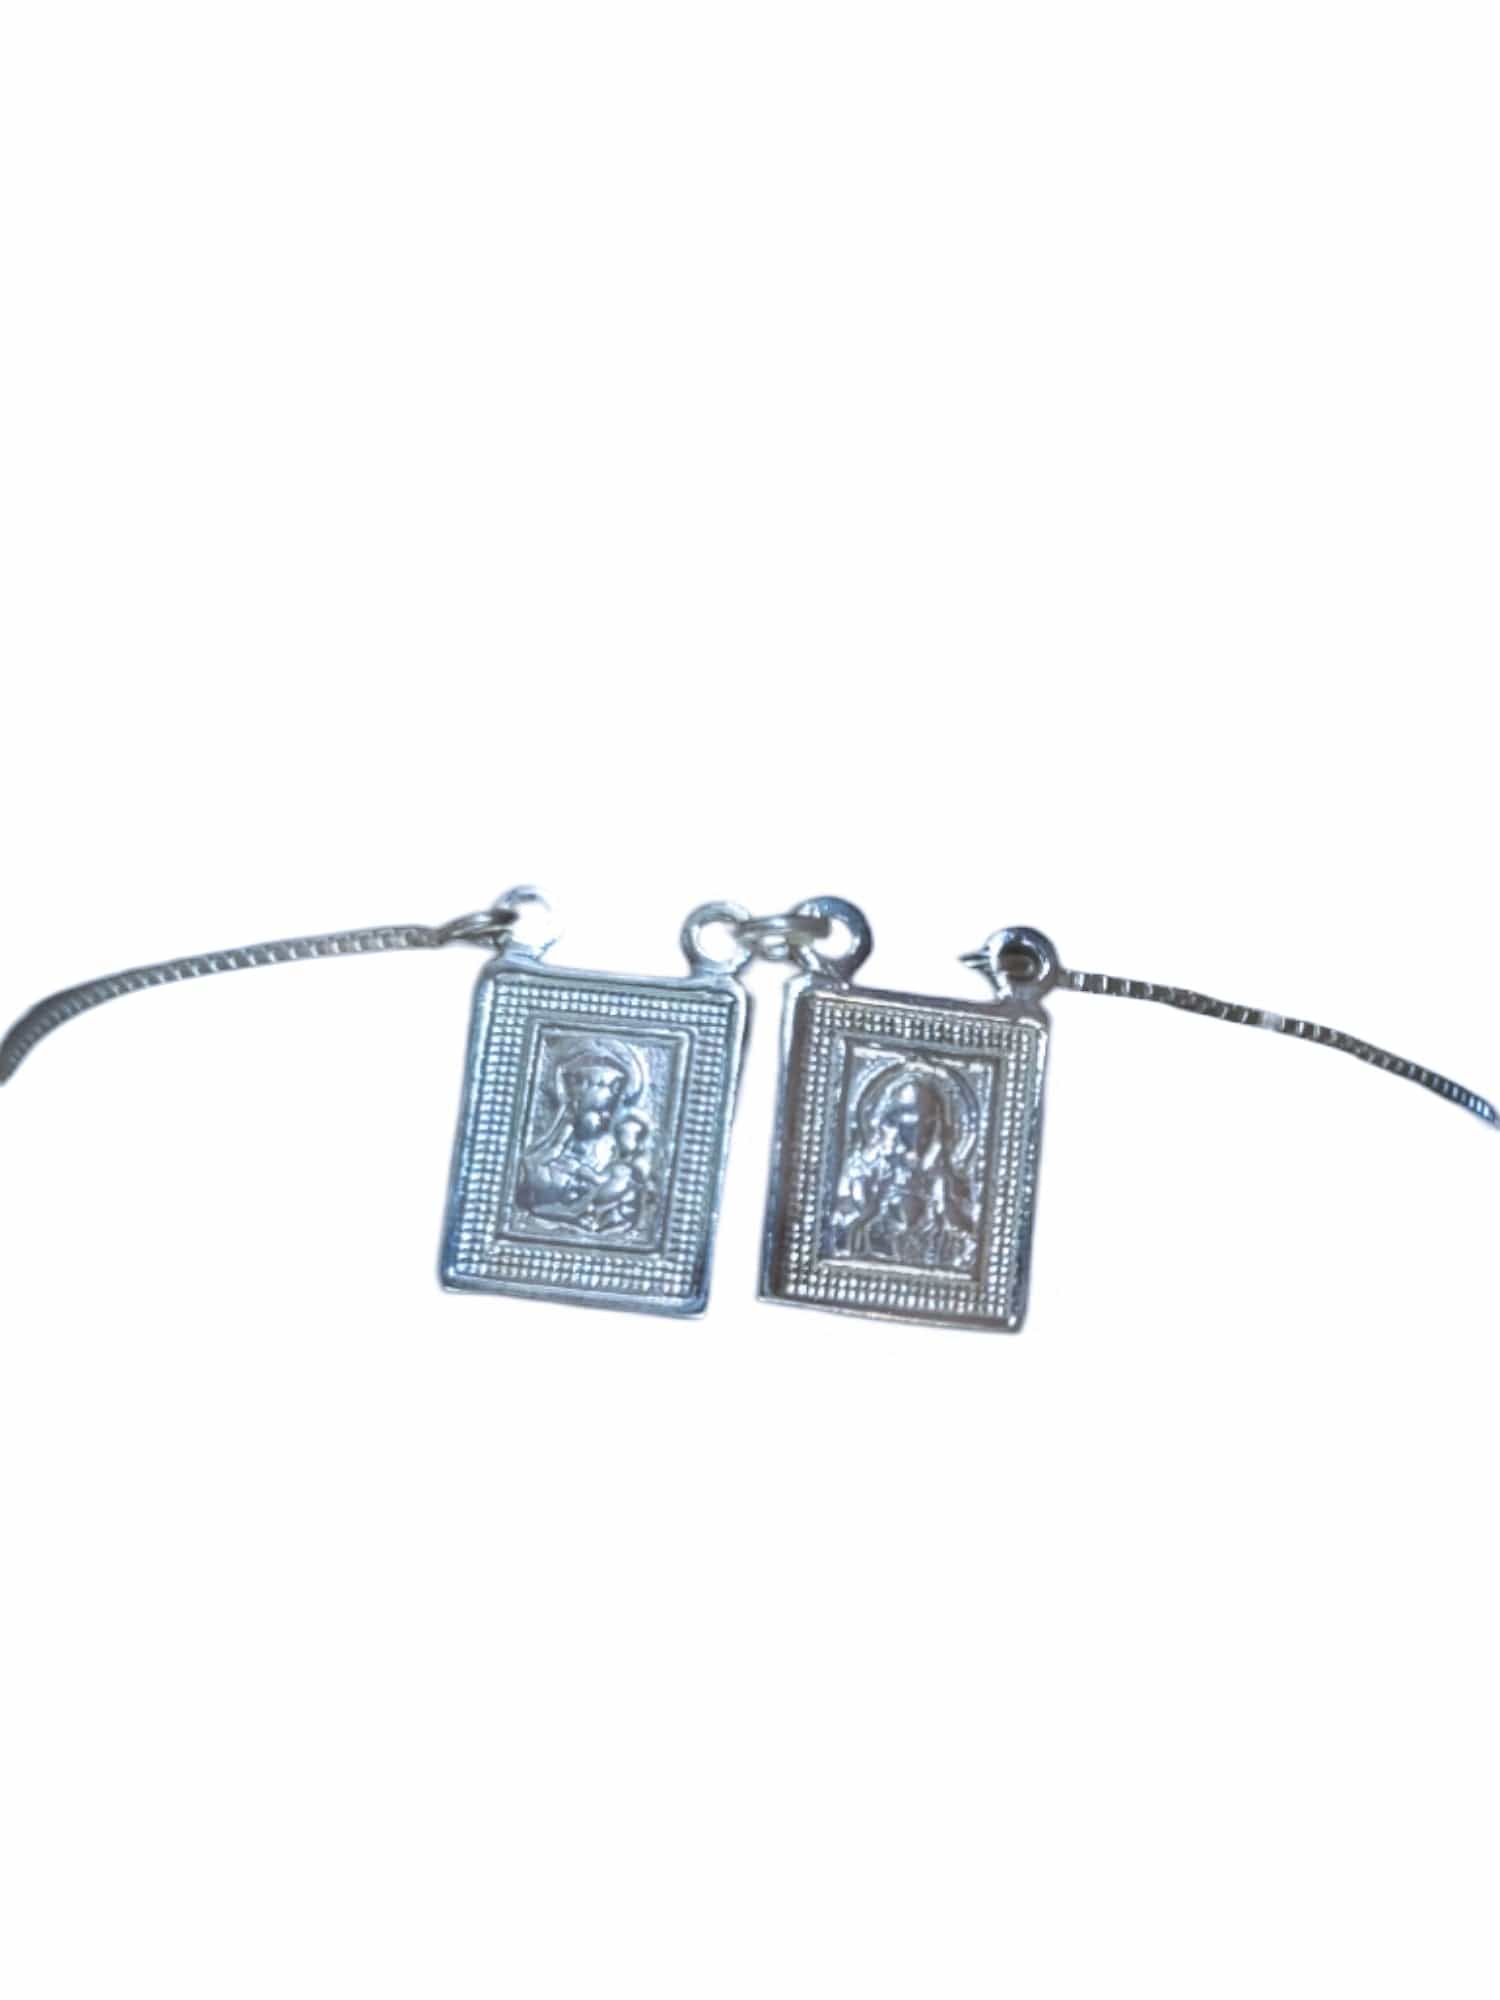 Pulseira Escapulário Nossa Senhora do Carmo e Sagrado Coração com Versículos em Prata de Lei 925-TerraCotta Arte Sacra